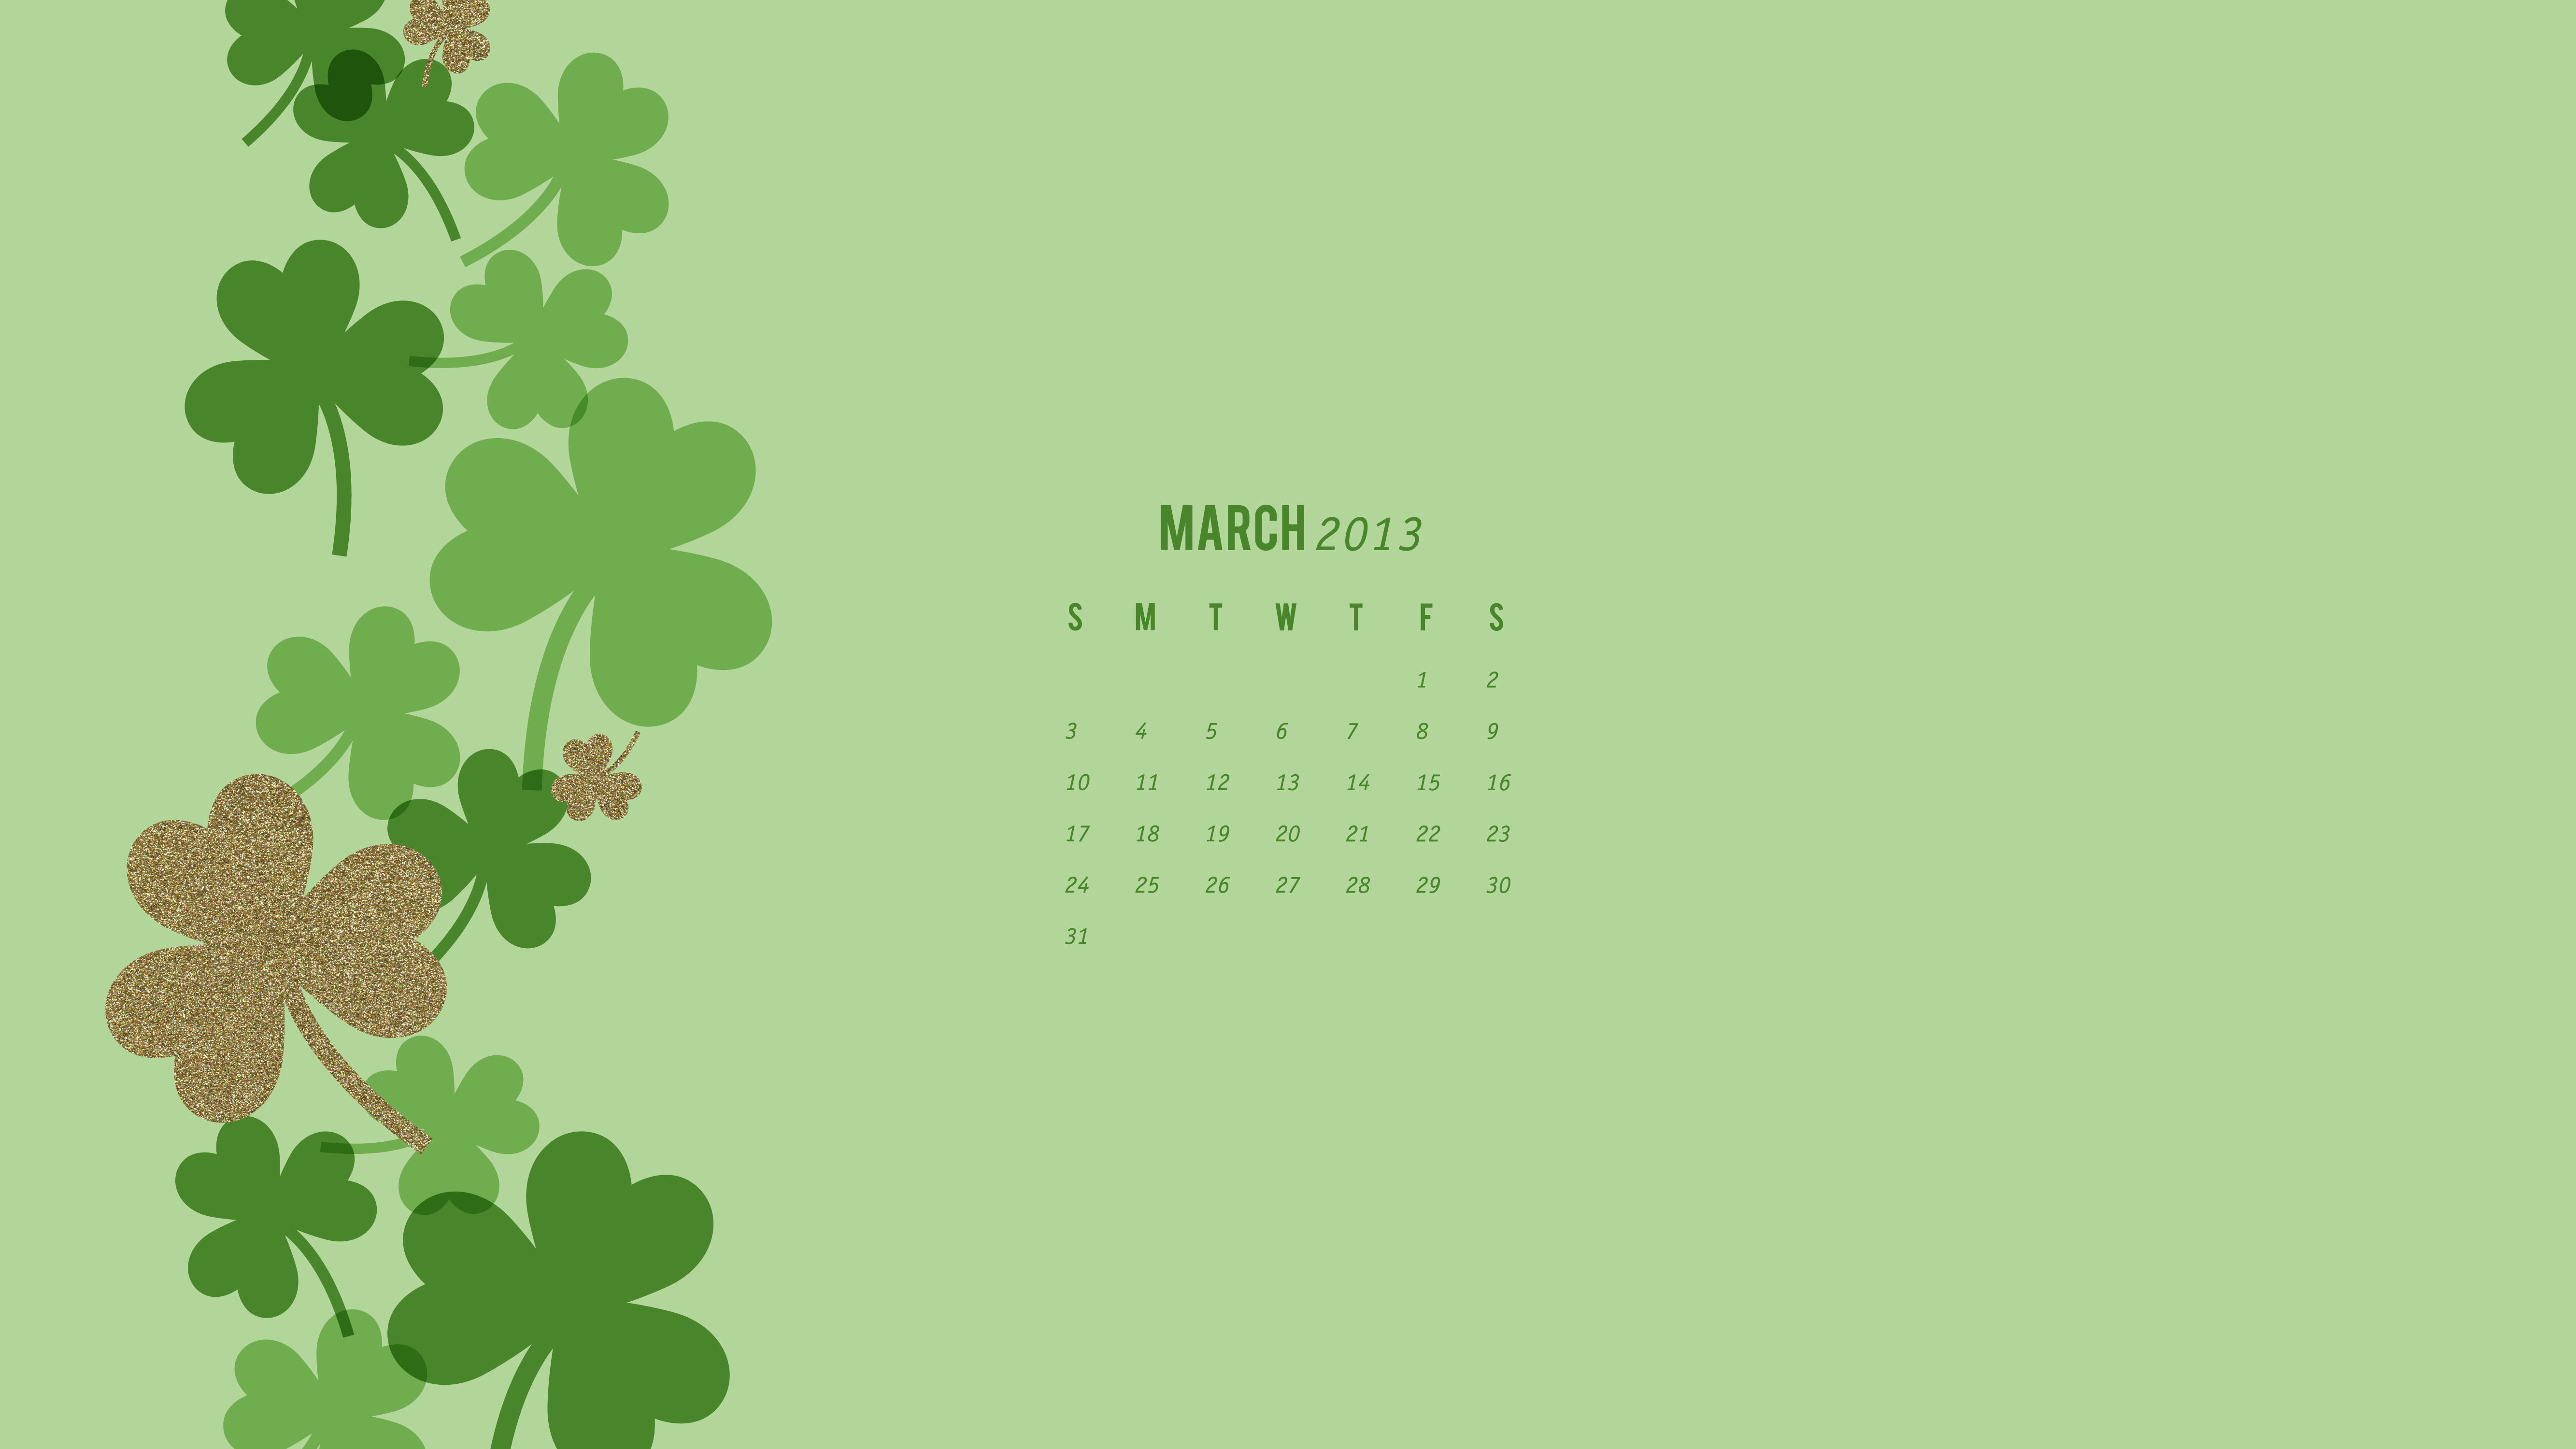 Tải miễn phí lịch năm 2013 tháng 3 (Free download March 2013 Calendar): Nếu bạn đang tìm kiếm một chiếc lịch đơn giản, nhưng đầy đủ các thông tin về ngày và giờ, hãy tải miễn phí lịch năm 2013 tháng 3 của chúng tôi. Điều đặc biệt là, bạn có thể in ra lịch của chúng tôi để treo lên tường, hoặc sử dụng bản sao kỹ thuật số để trang trí cho máy tính. Đừng bỏ lỡ cơ hội tải về ngay hôm nay!